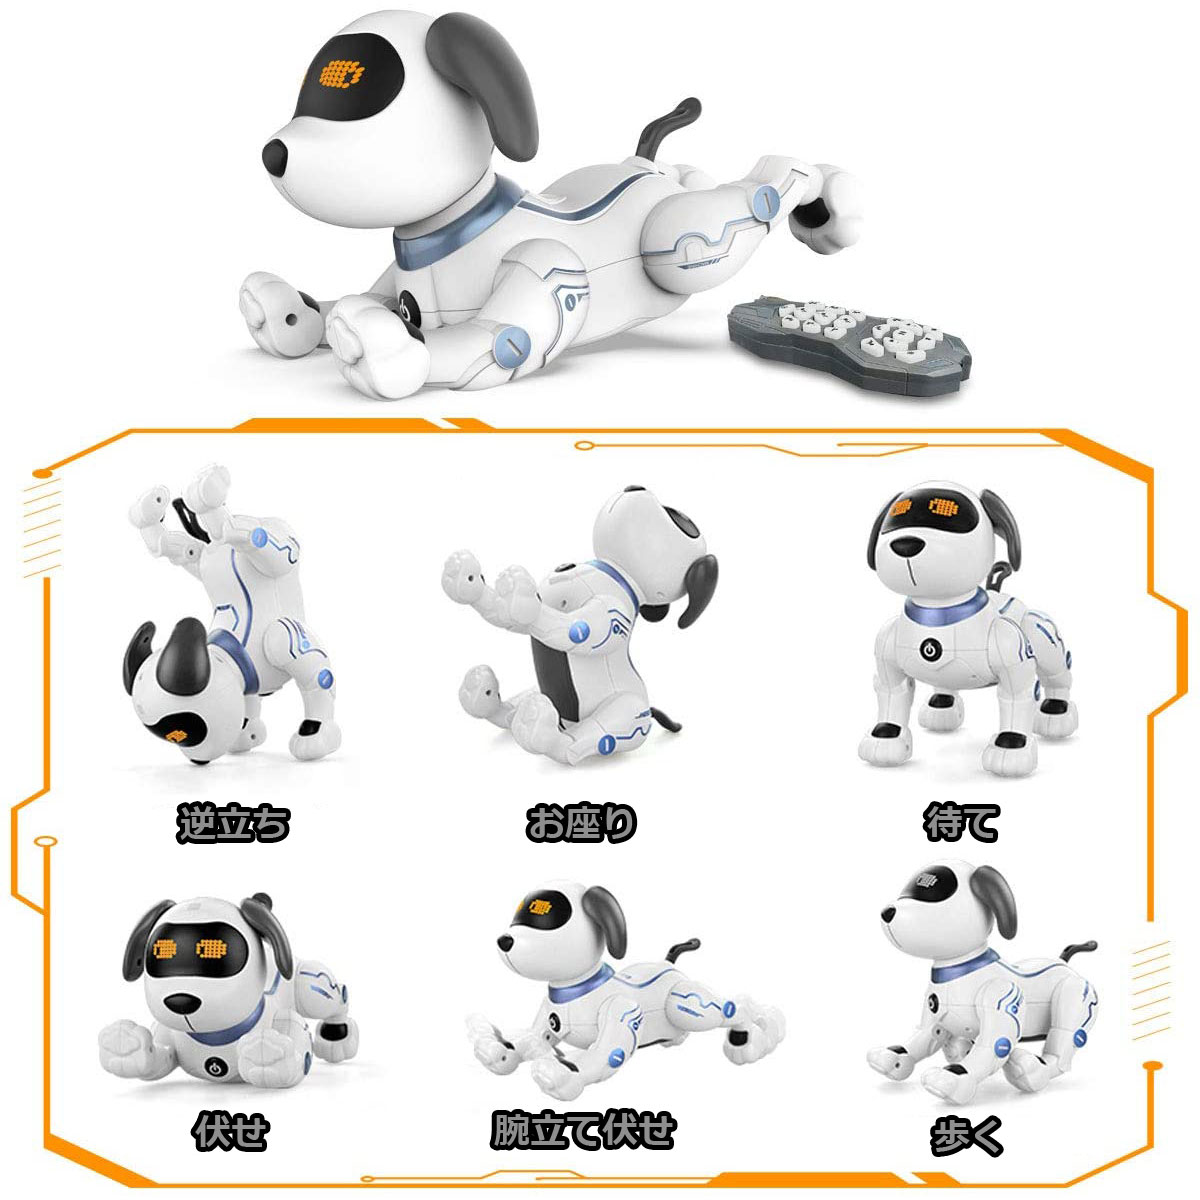 ロボット犬 スタンドドッグ 様々な技を披露 走る、ダンス、歌う、プログラミング、音声指示（英語のみ）、吠える、甘える、待て、逆立ち、腕立て伏せ、お座り、挨拶、さわる、伏せ。音声指示機能では英語で話しかけると芸を披露してくれます。